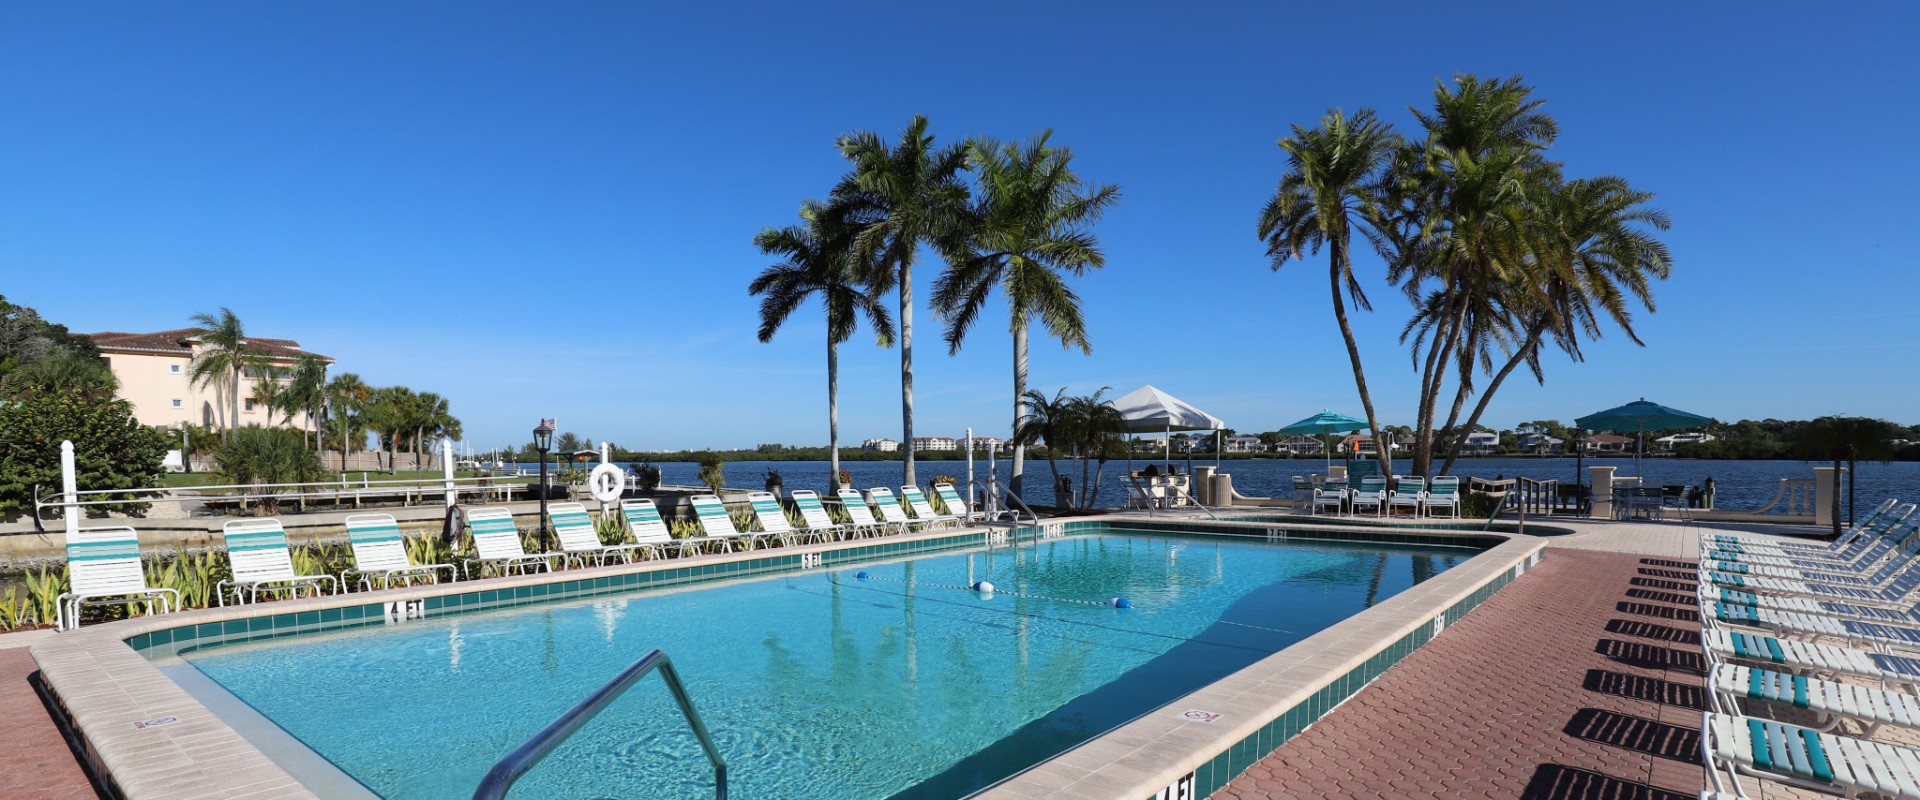 Siesta Key Beachfront Hotel Resort | The Palm Bay Club Siesta Key